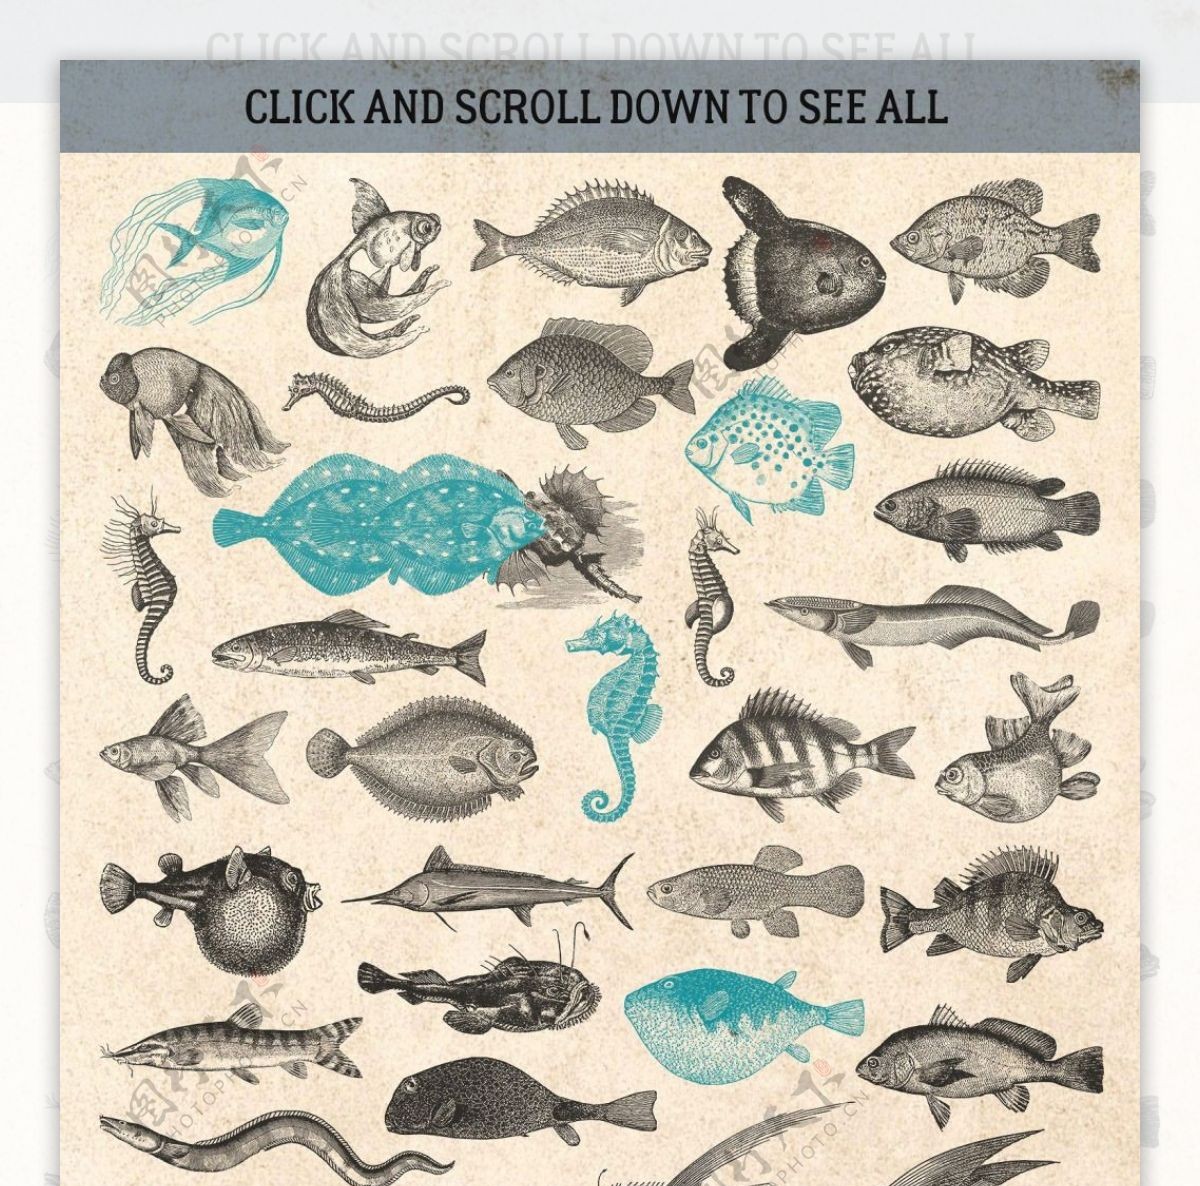 素描绘制的海洋各类生物动物